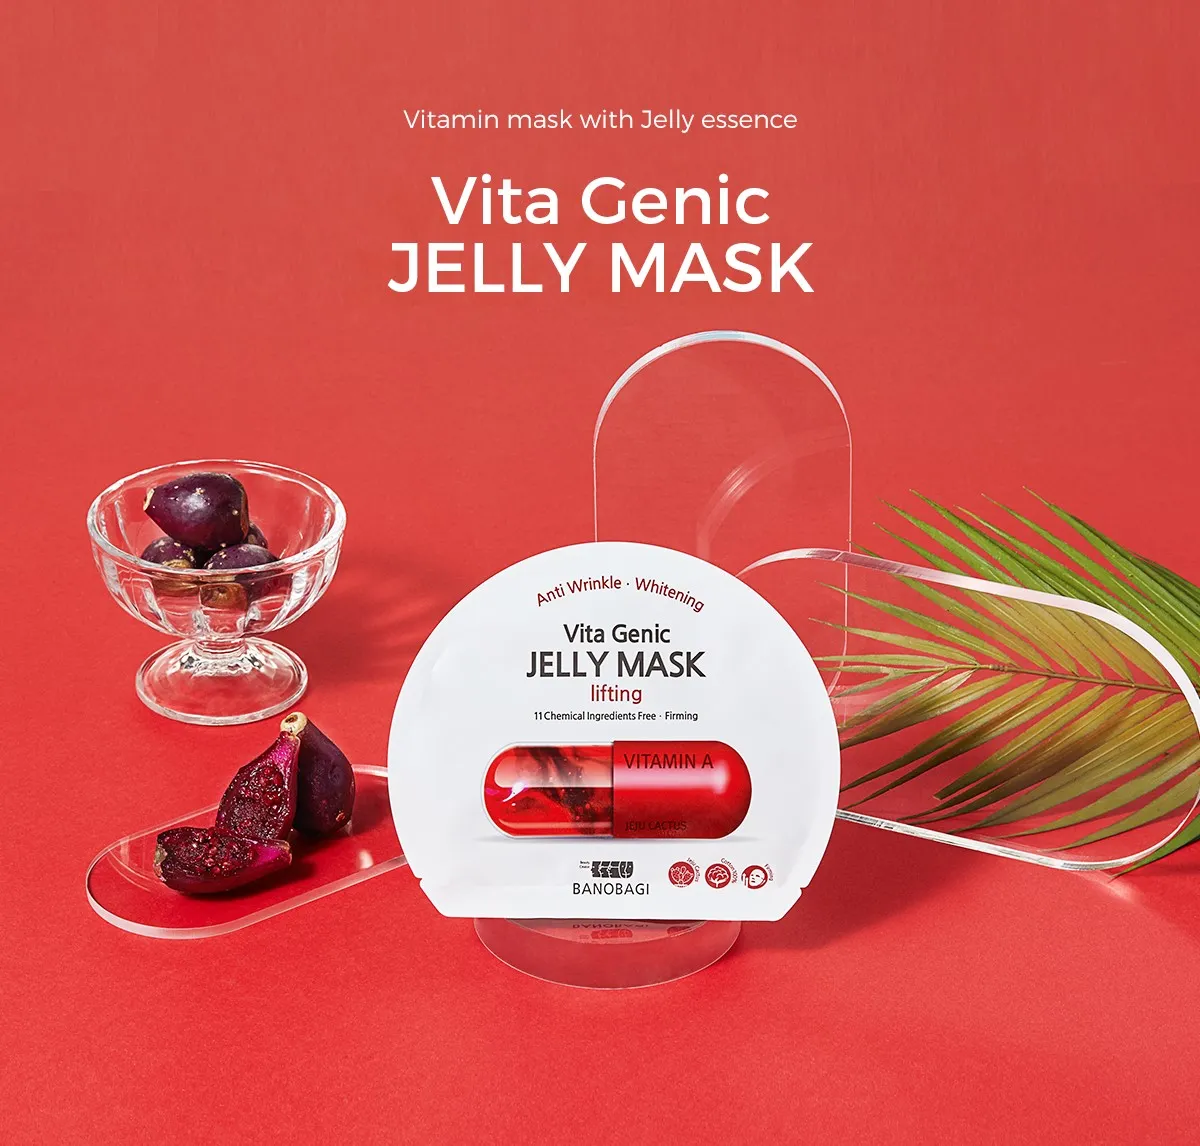 Mặt Nạ Vita Genic Jelly Mask - Lifting